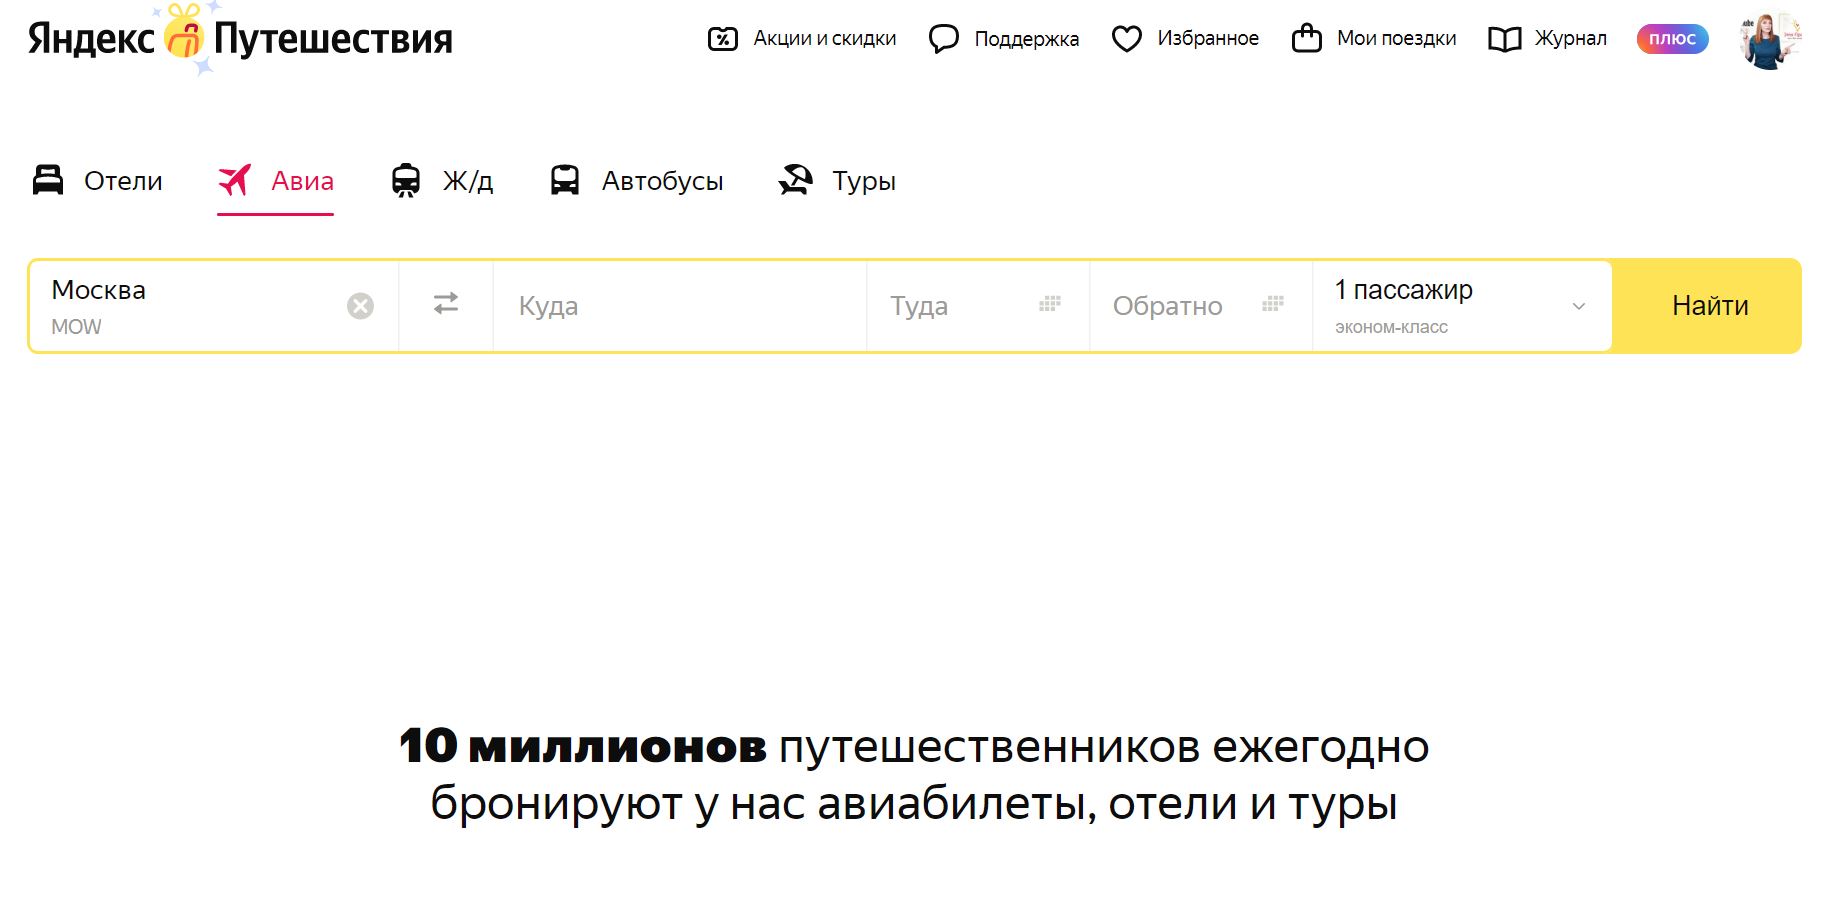 Лучшие приложения и сайты для поиска авиабилетов, рейтинг 2023 - Яндекс Путешествия - фото